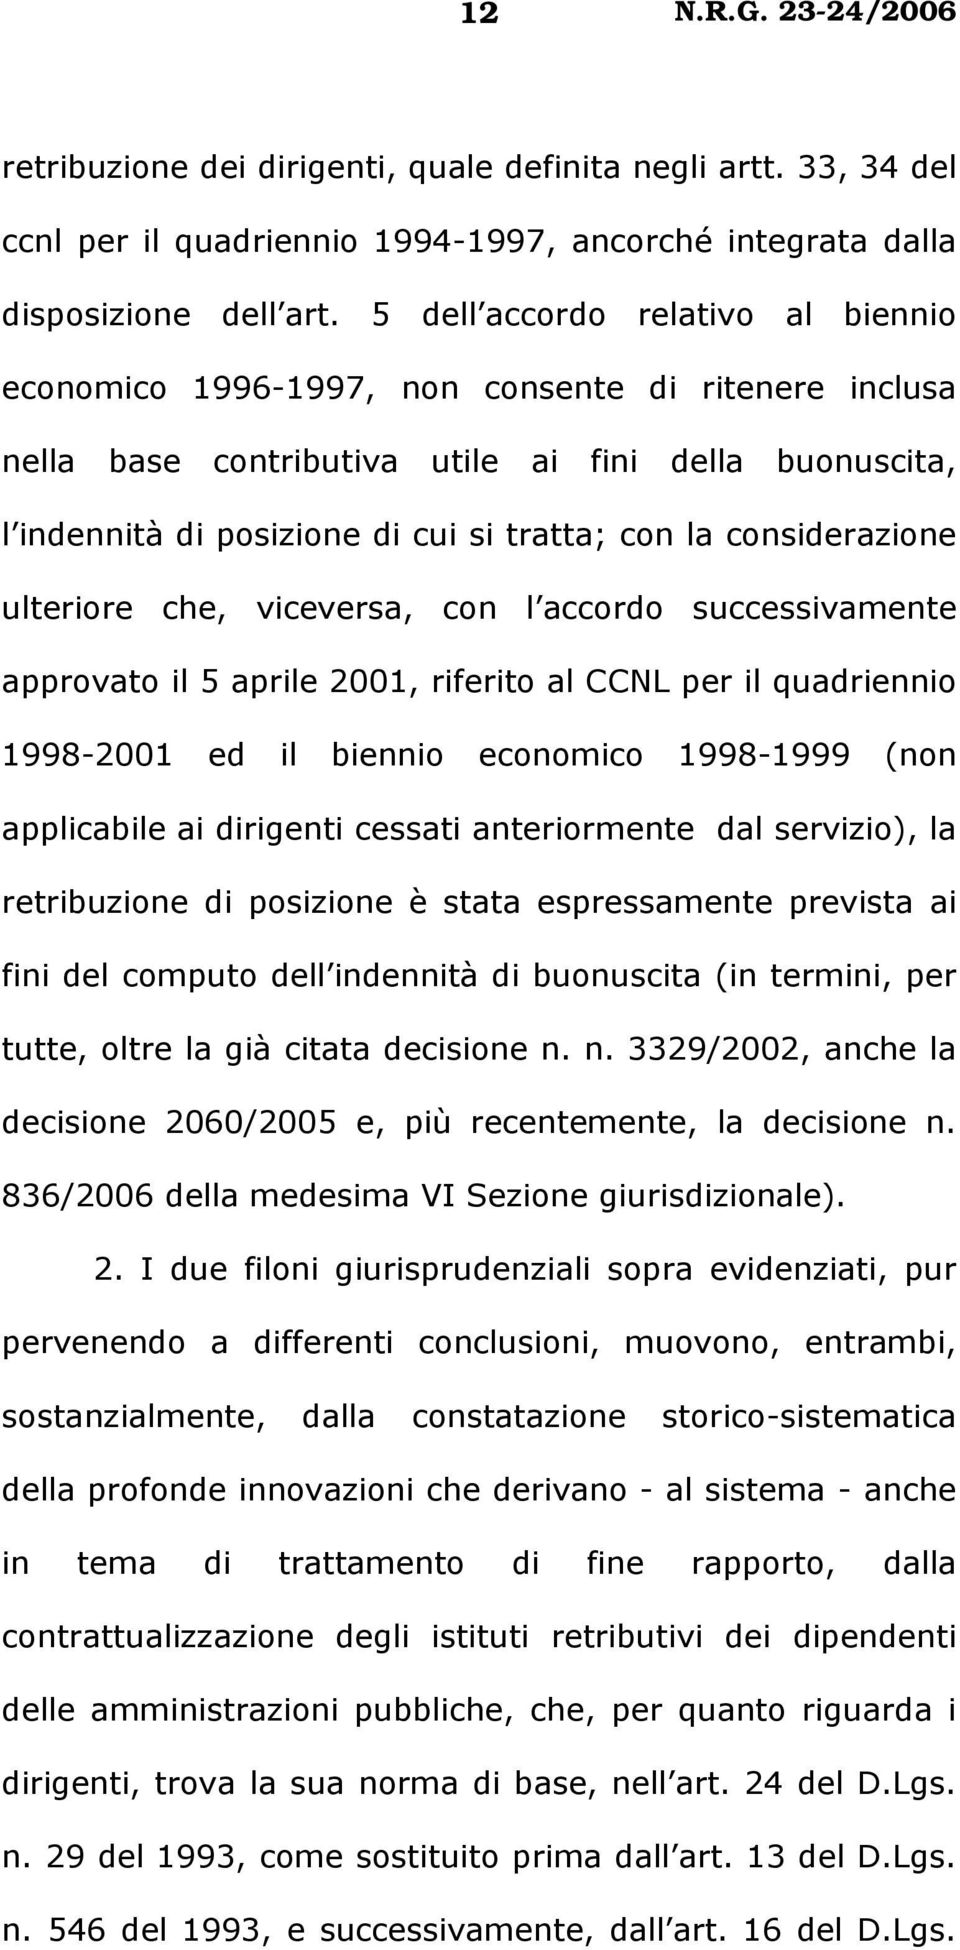 considerazione ulteriore che, viceversa, con l accordo successivamente approvato il 5 aprile 2001, riferito al CCNL per il quadriennio 1998-2001 ed il biennio economico 1998-1999 (non applicabile ai